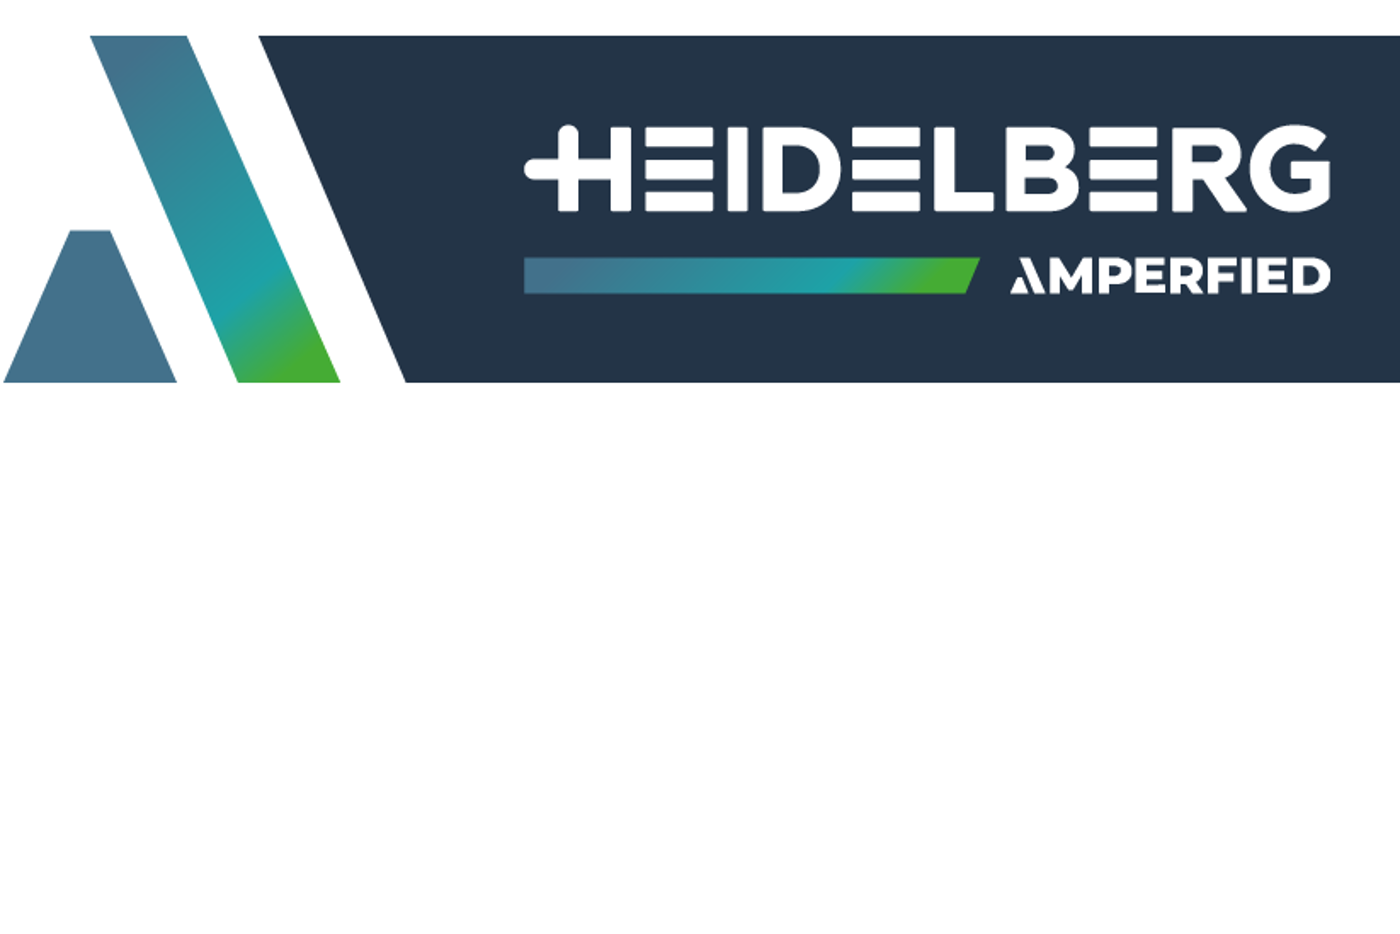 HEIDELBERG_AMPERFIED_Logo